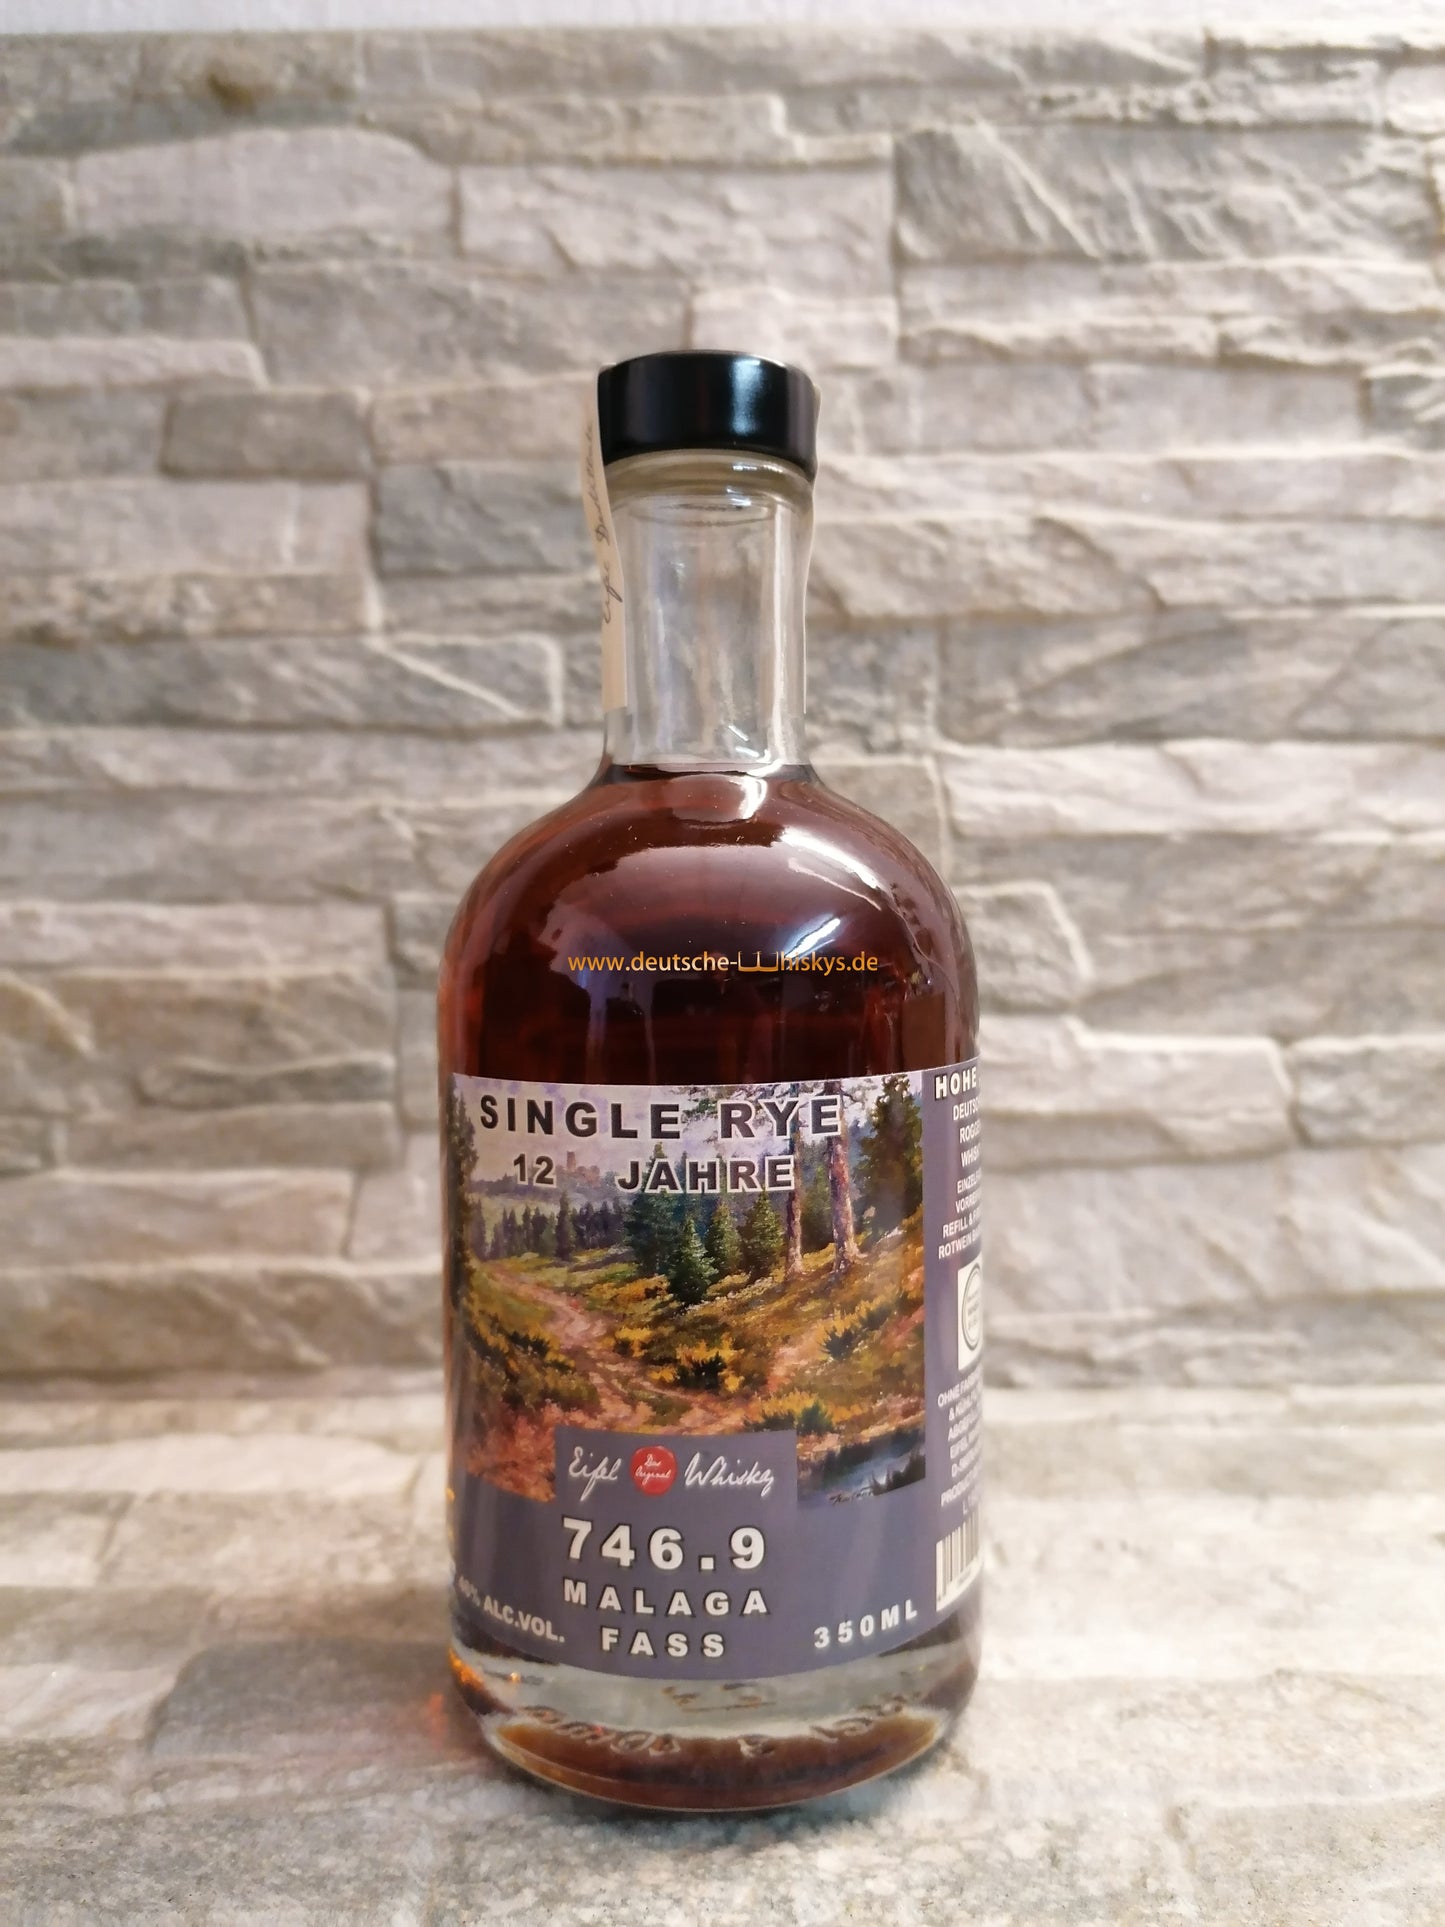 Eifel Whisky 746.9 Single Rye "Malaga Cask" (12 Jahre) 47,7%vol. 0,35l